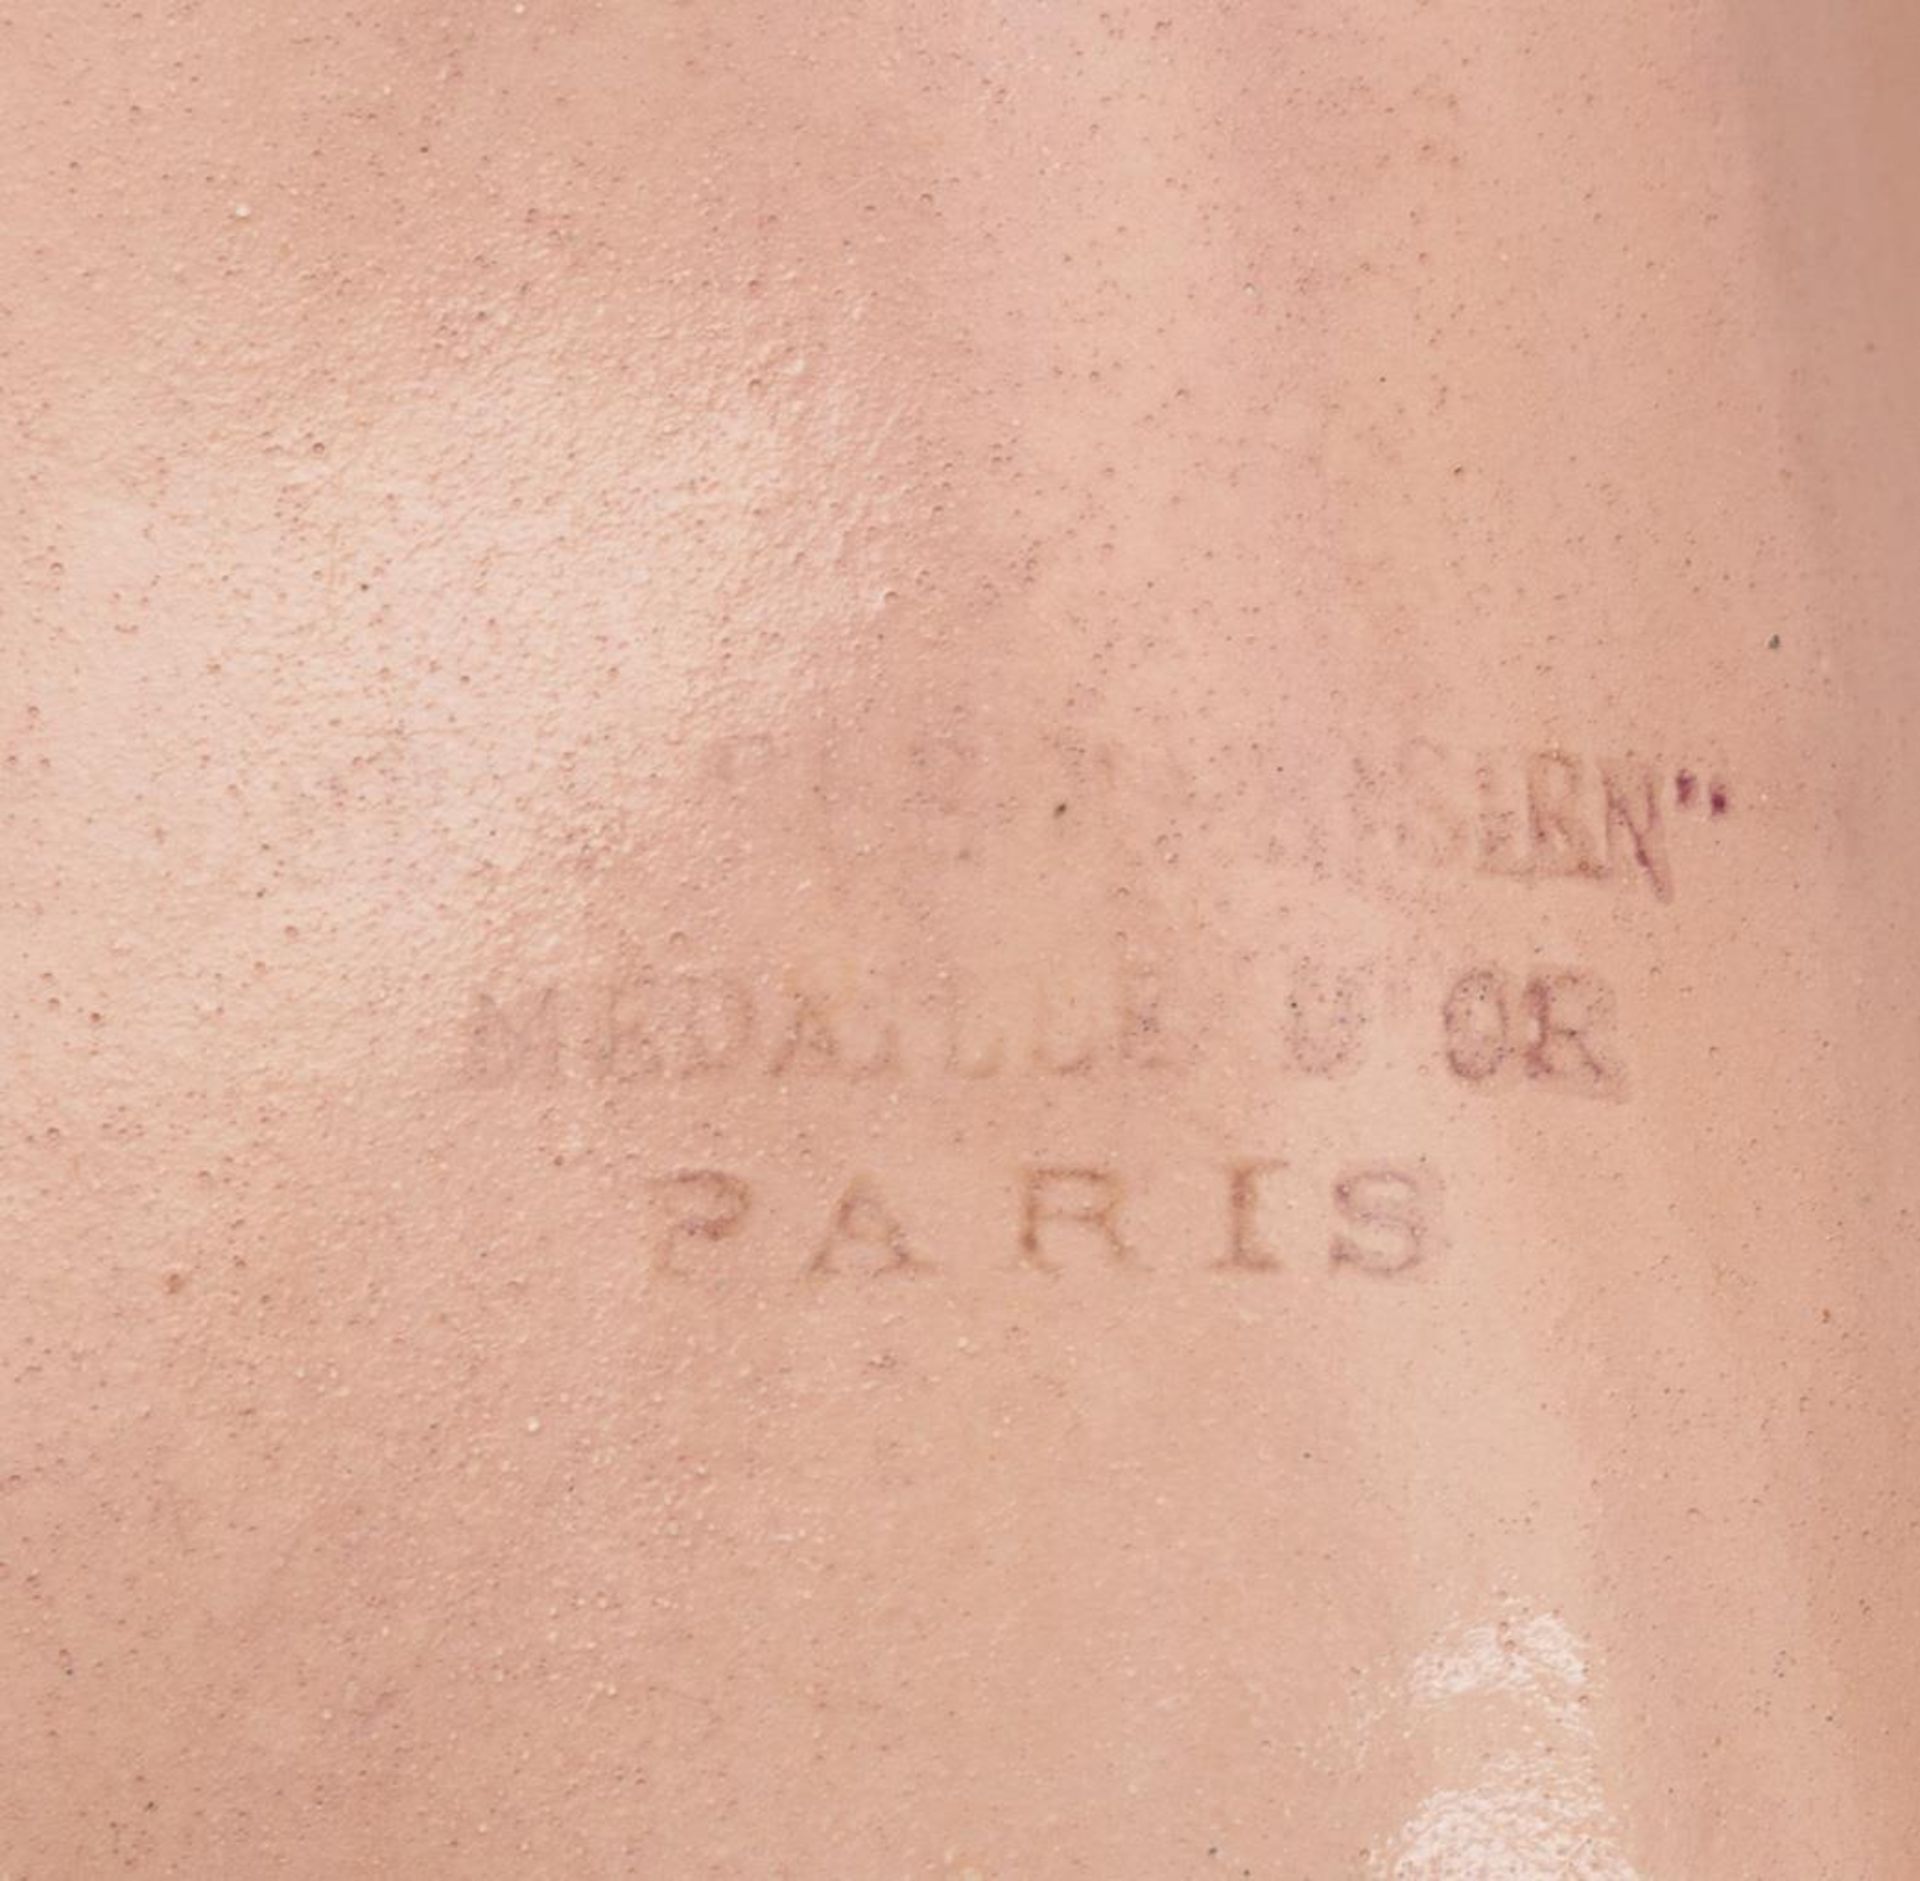 Zierliche Französin "Celine".  Jules Steiner, Paris. - Bild 6 aus 6